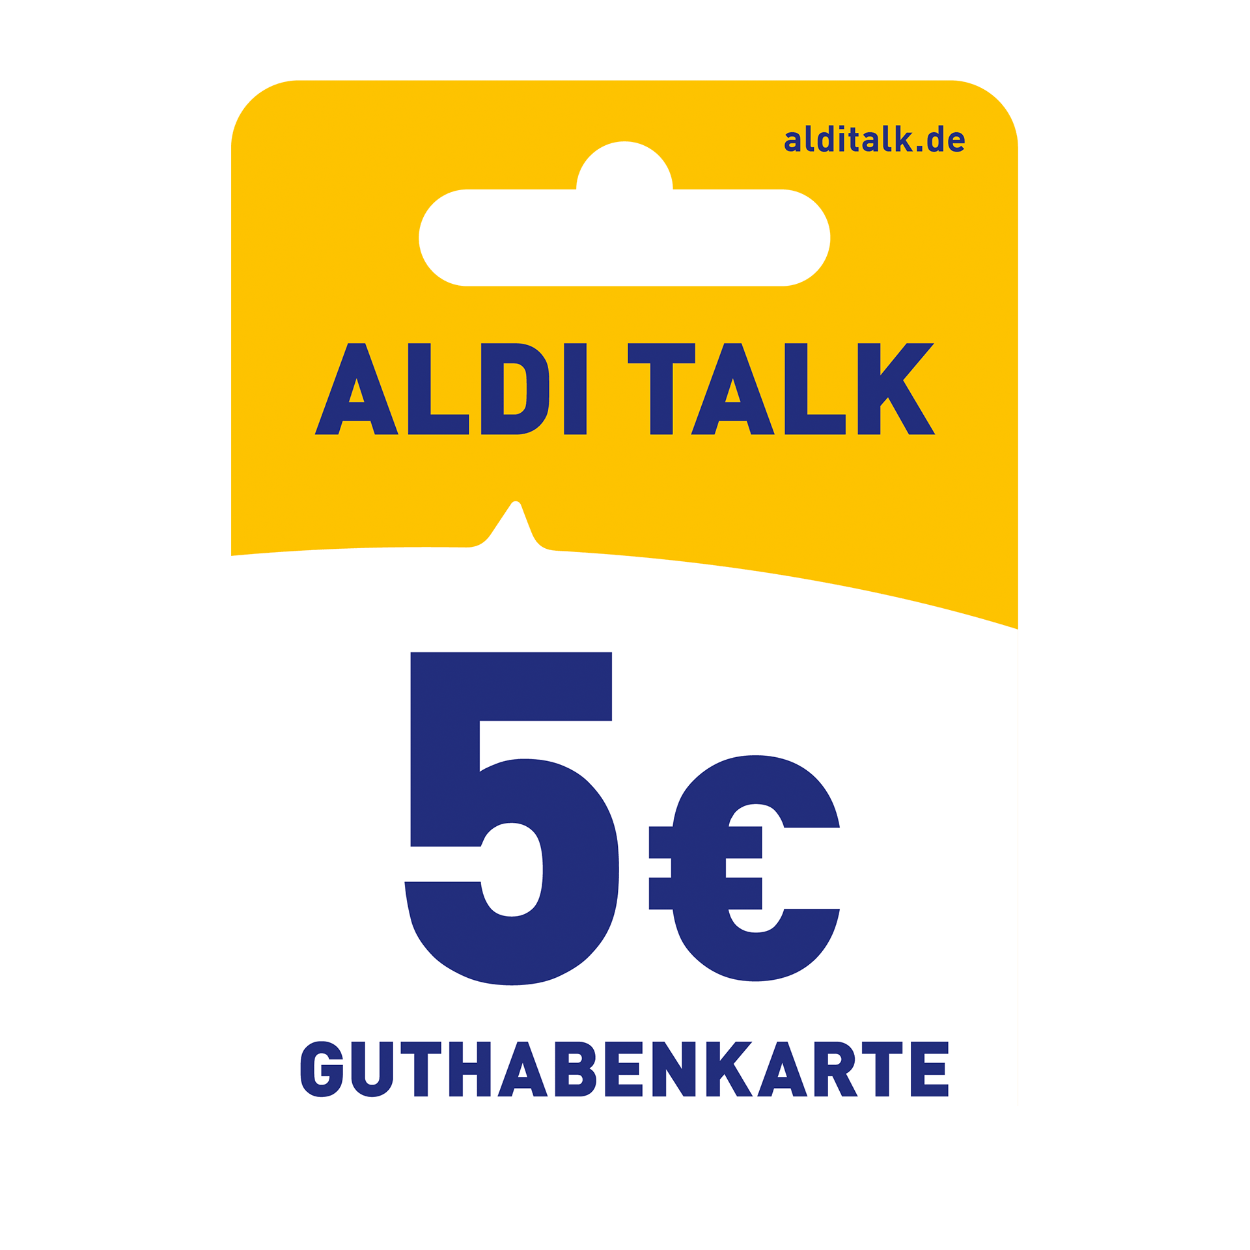 ALDI TALK 5 € ALDI Nord bei Guthabenkarte günstig